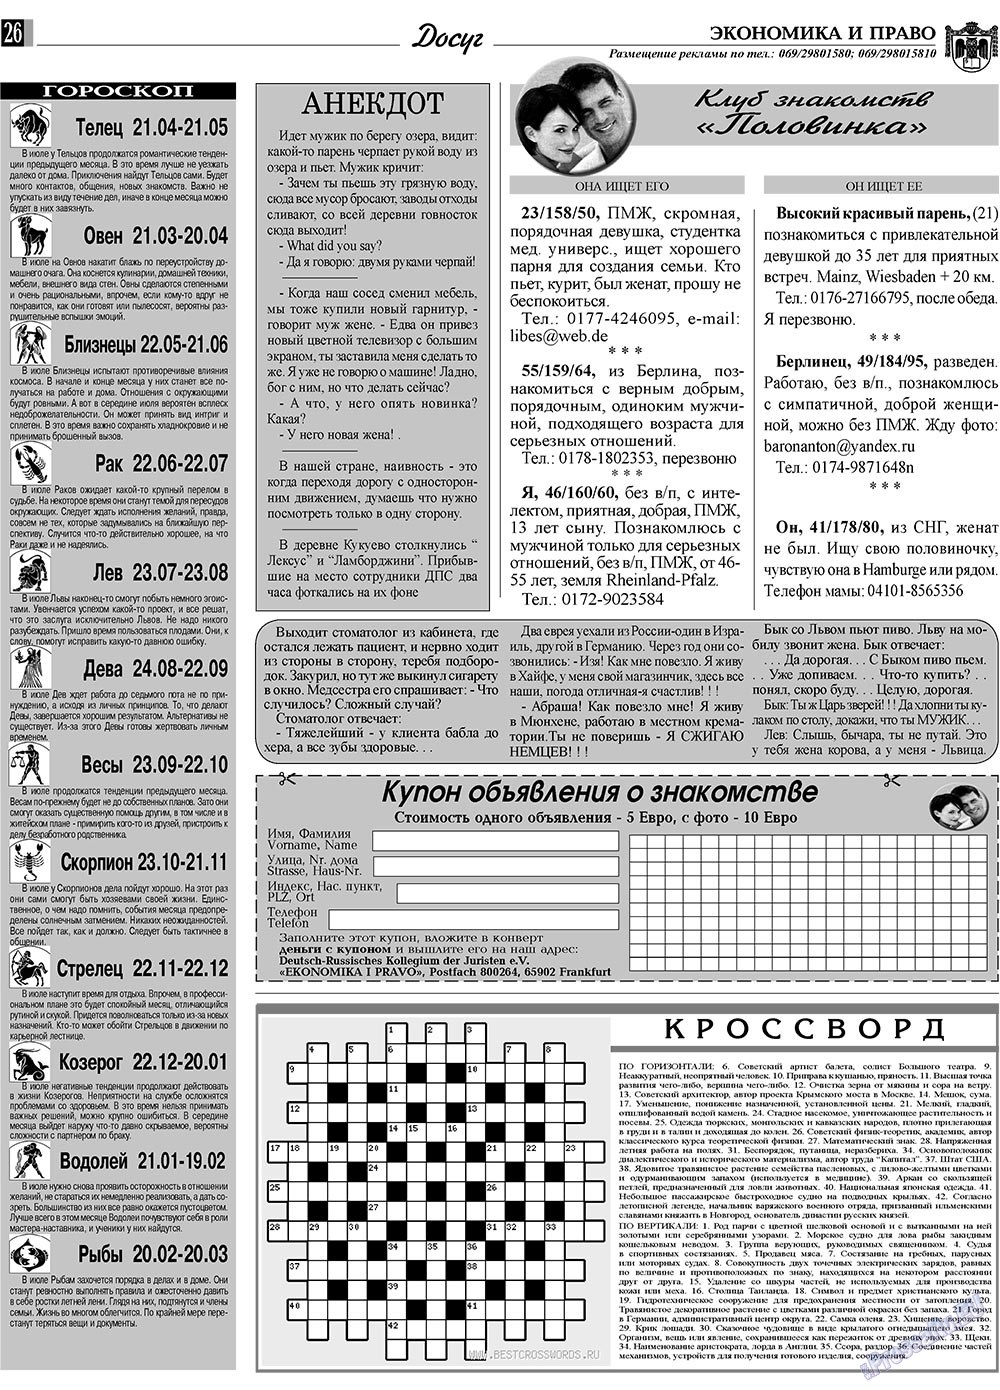 Экономика и право, газета. 2009 №7 стр.26